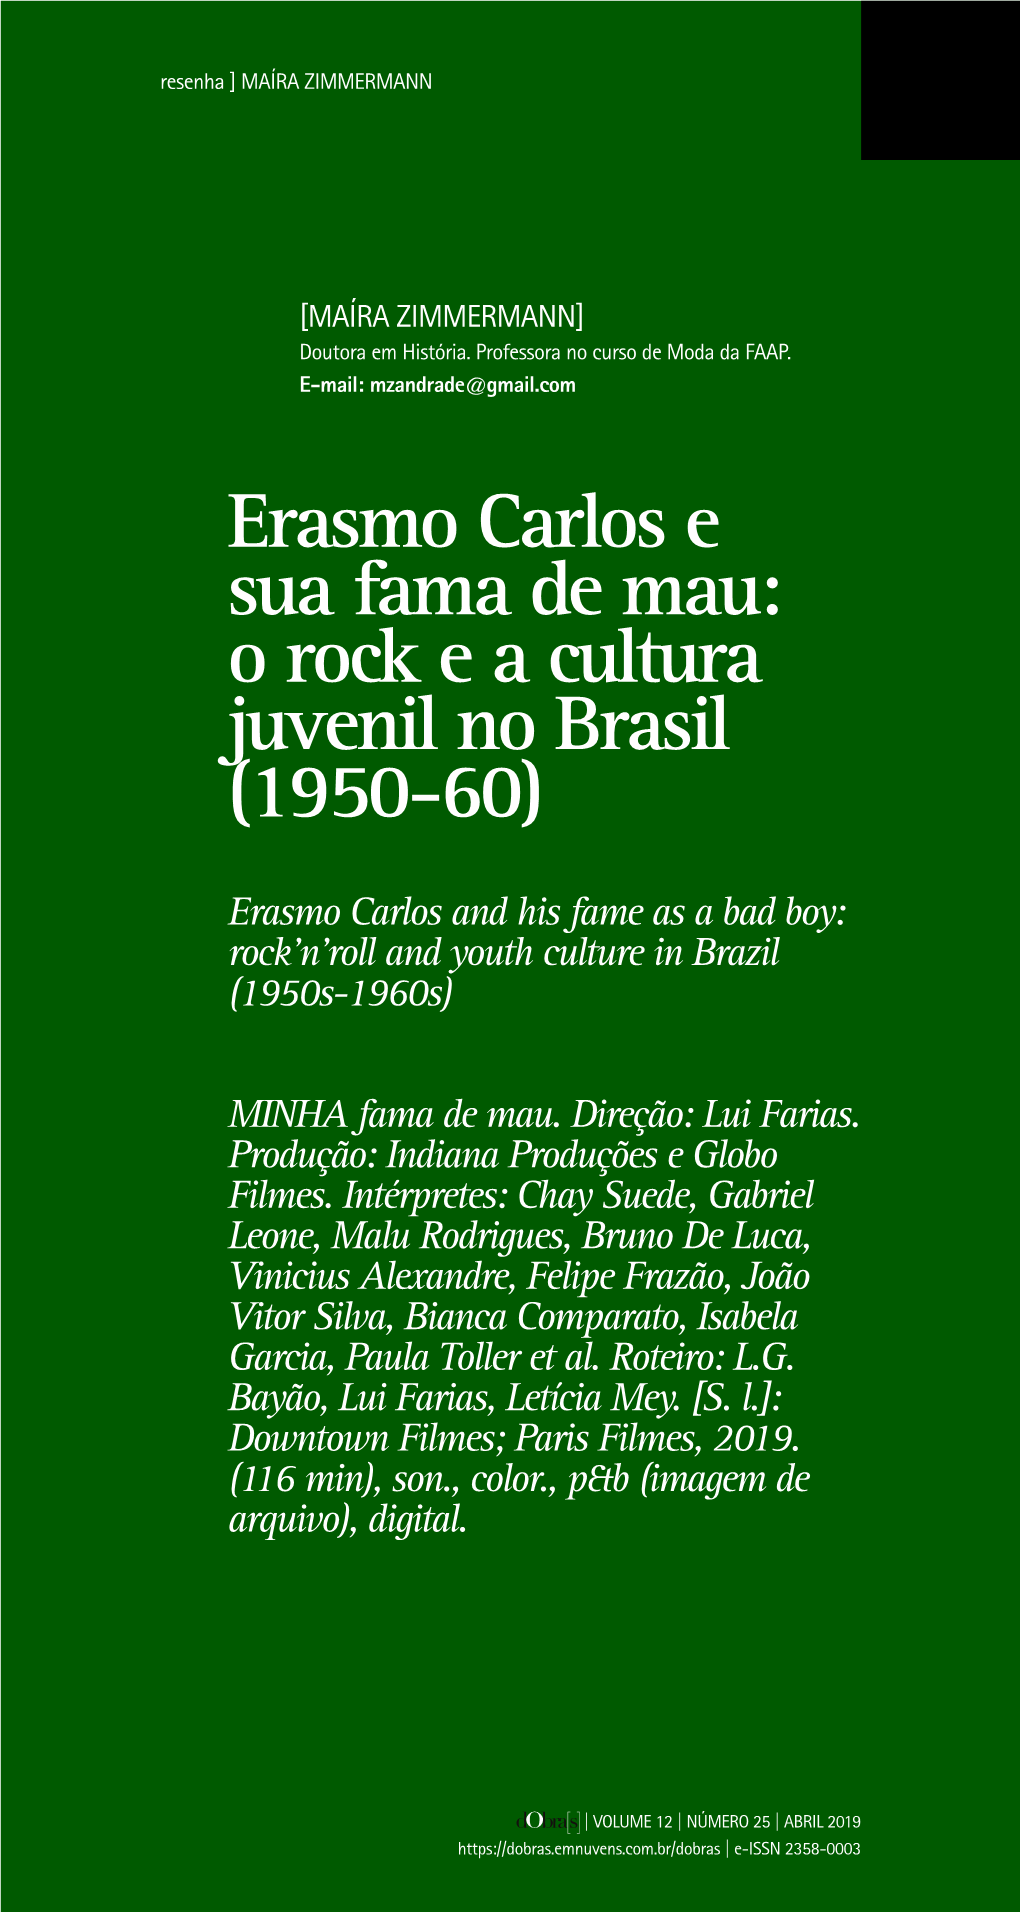 Erasmo Carlos E Sua Fama De Mau: O Rock E a Cultura Juvenil No Brasil (1950-60)